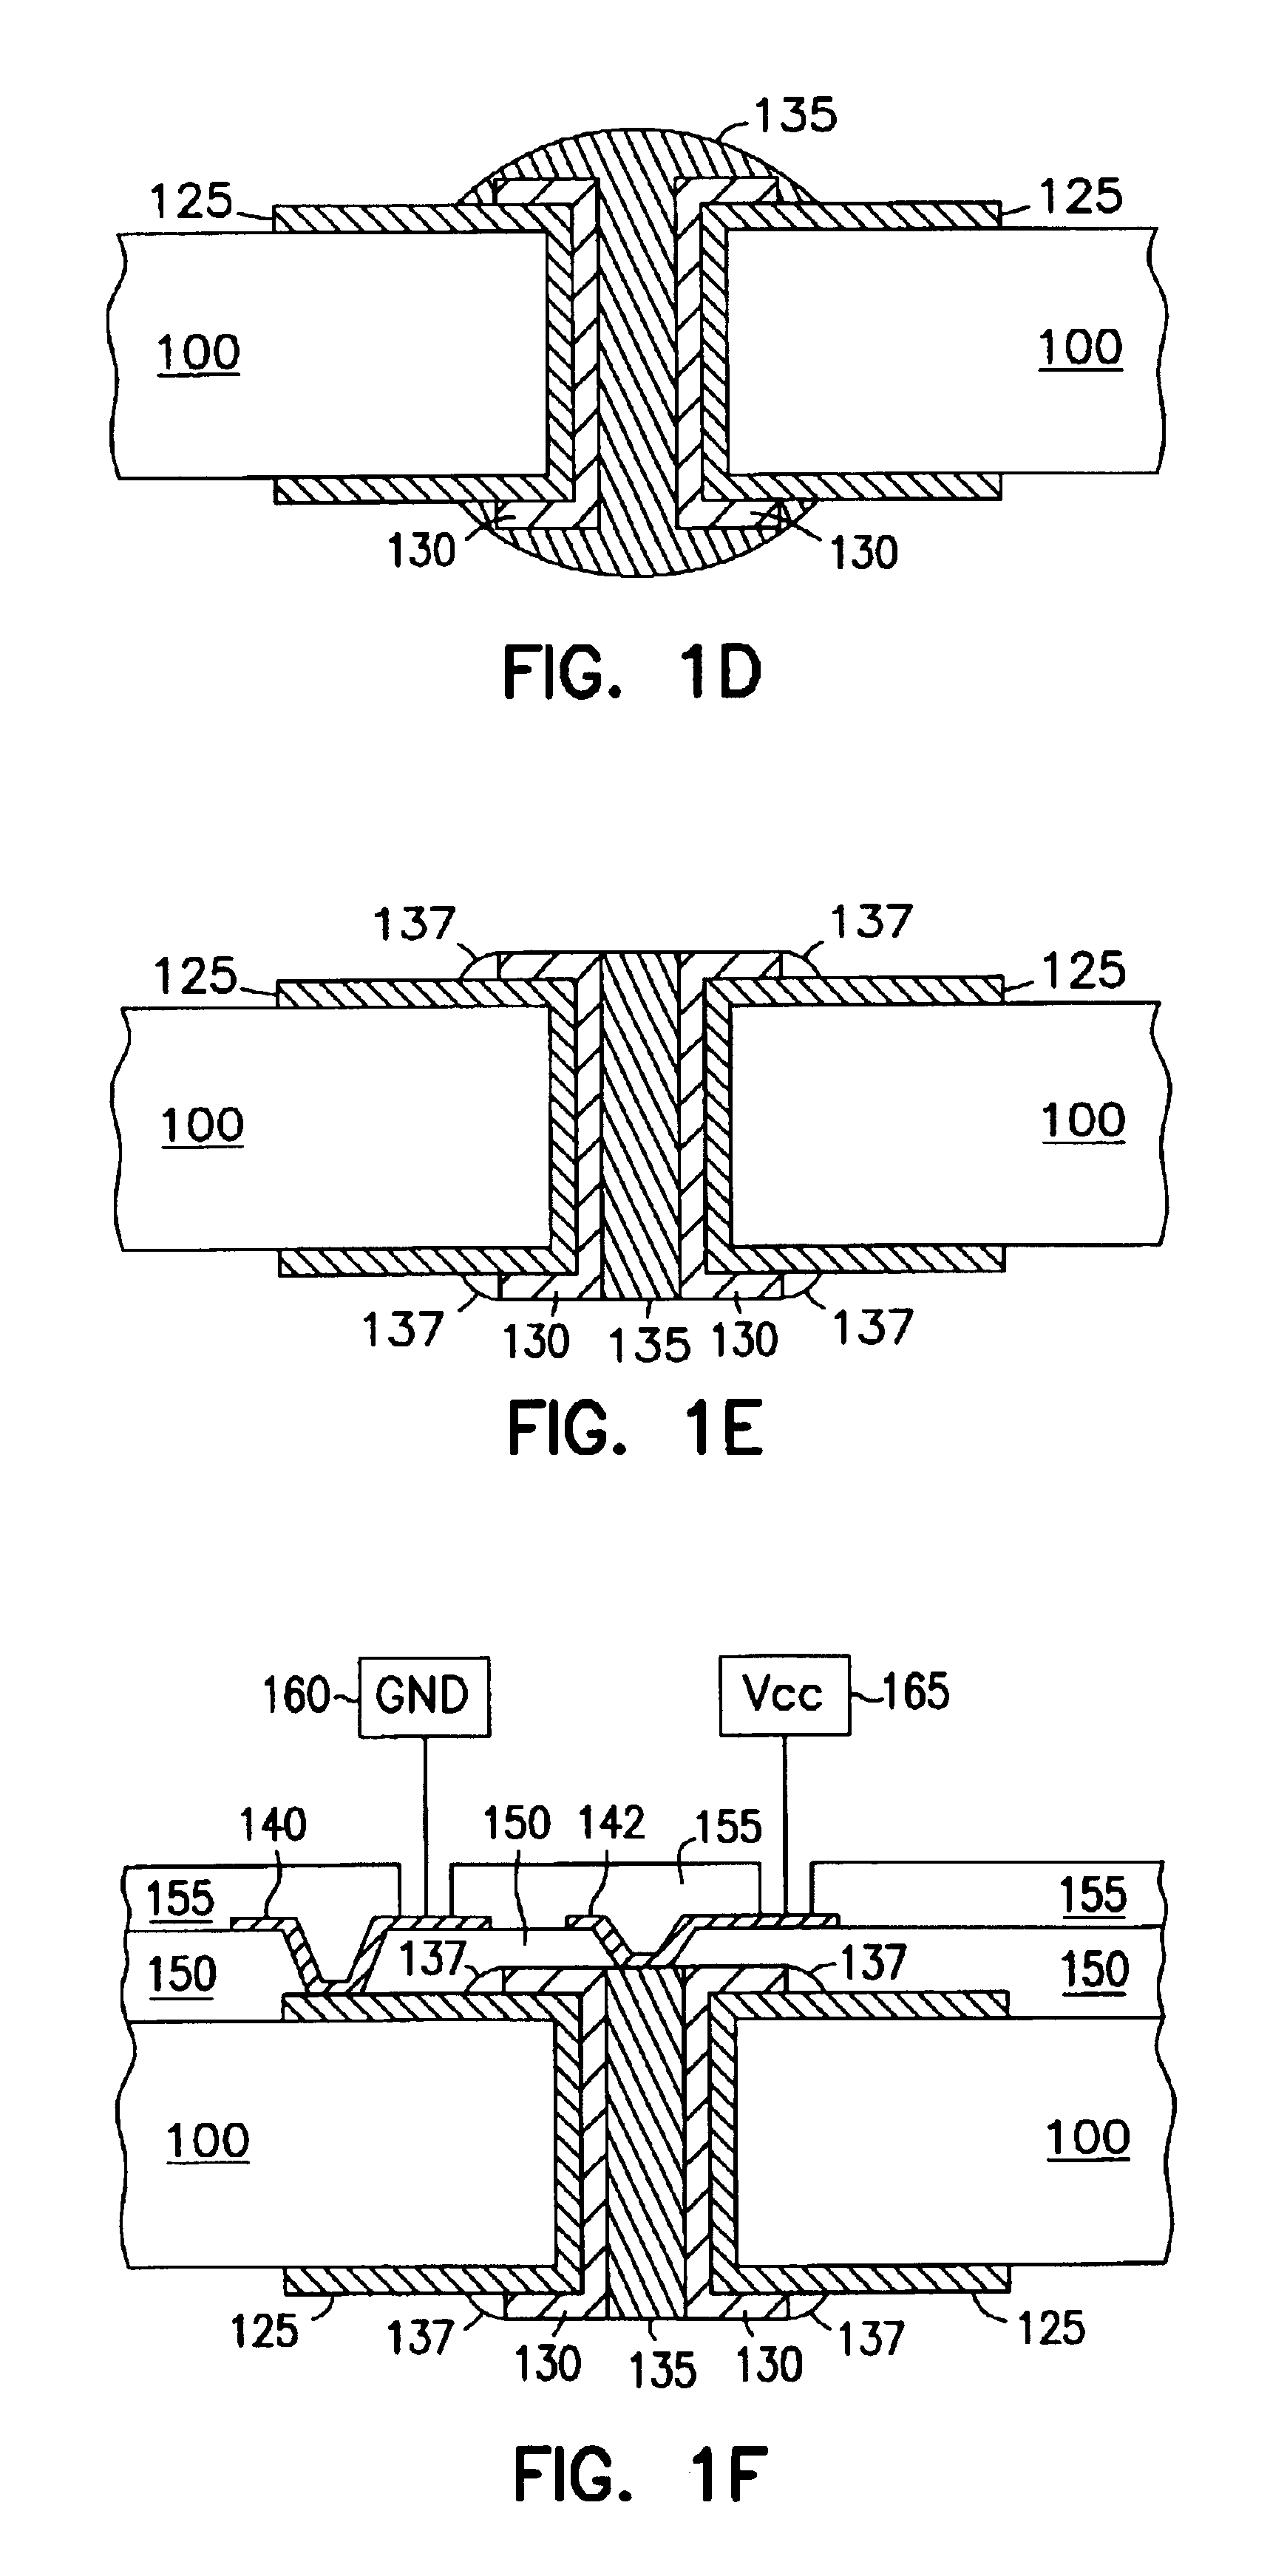 Self-aligned coaxial via capacitors